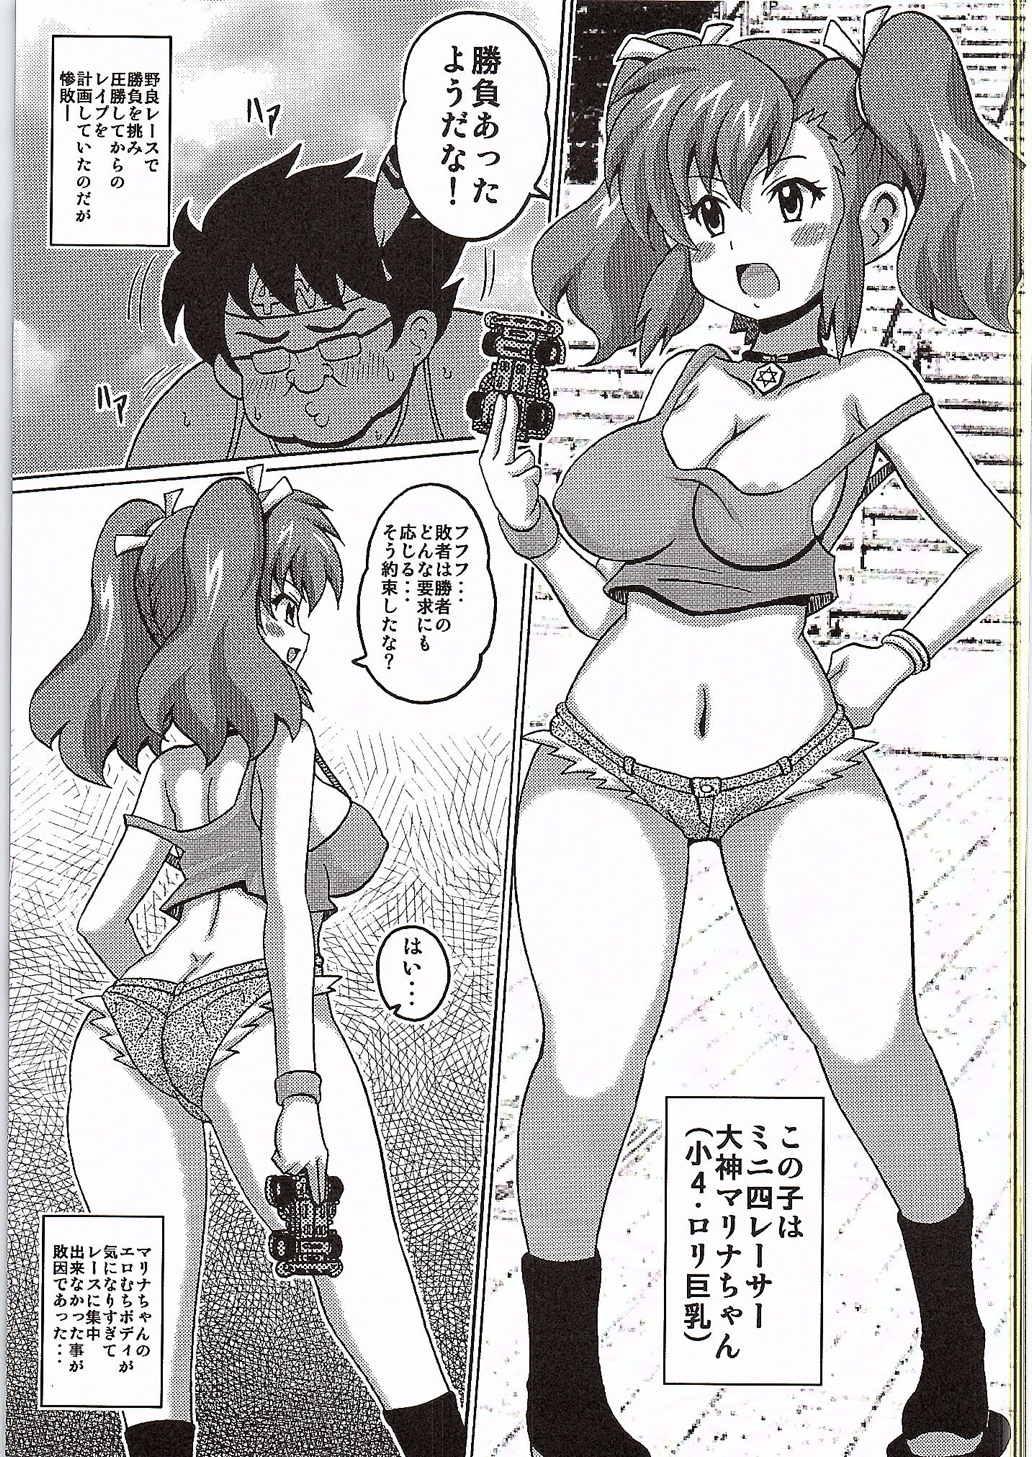 Mum Ogami Marina!! MAX - Bakusou kyoudai lets and go Hot Girl Porn - Page 3